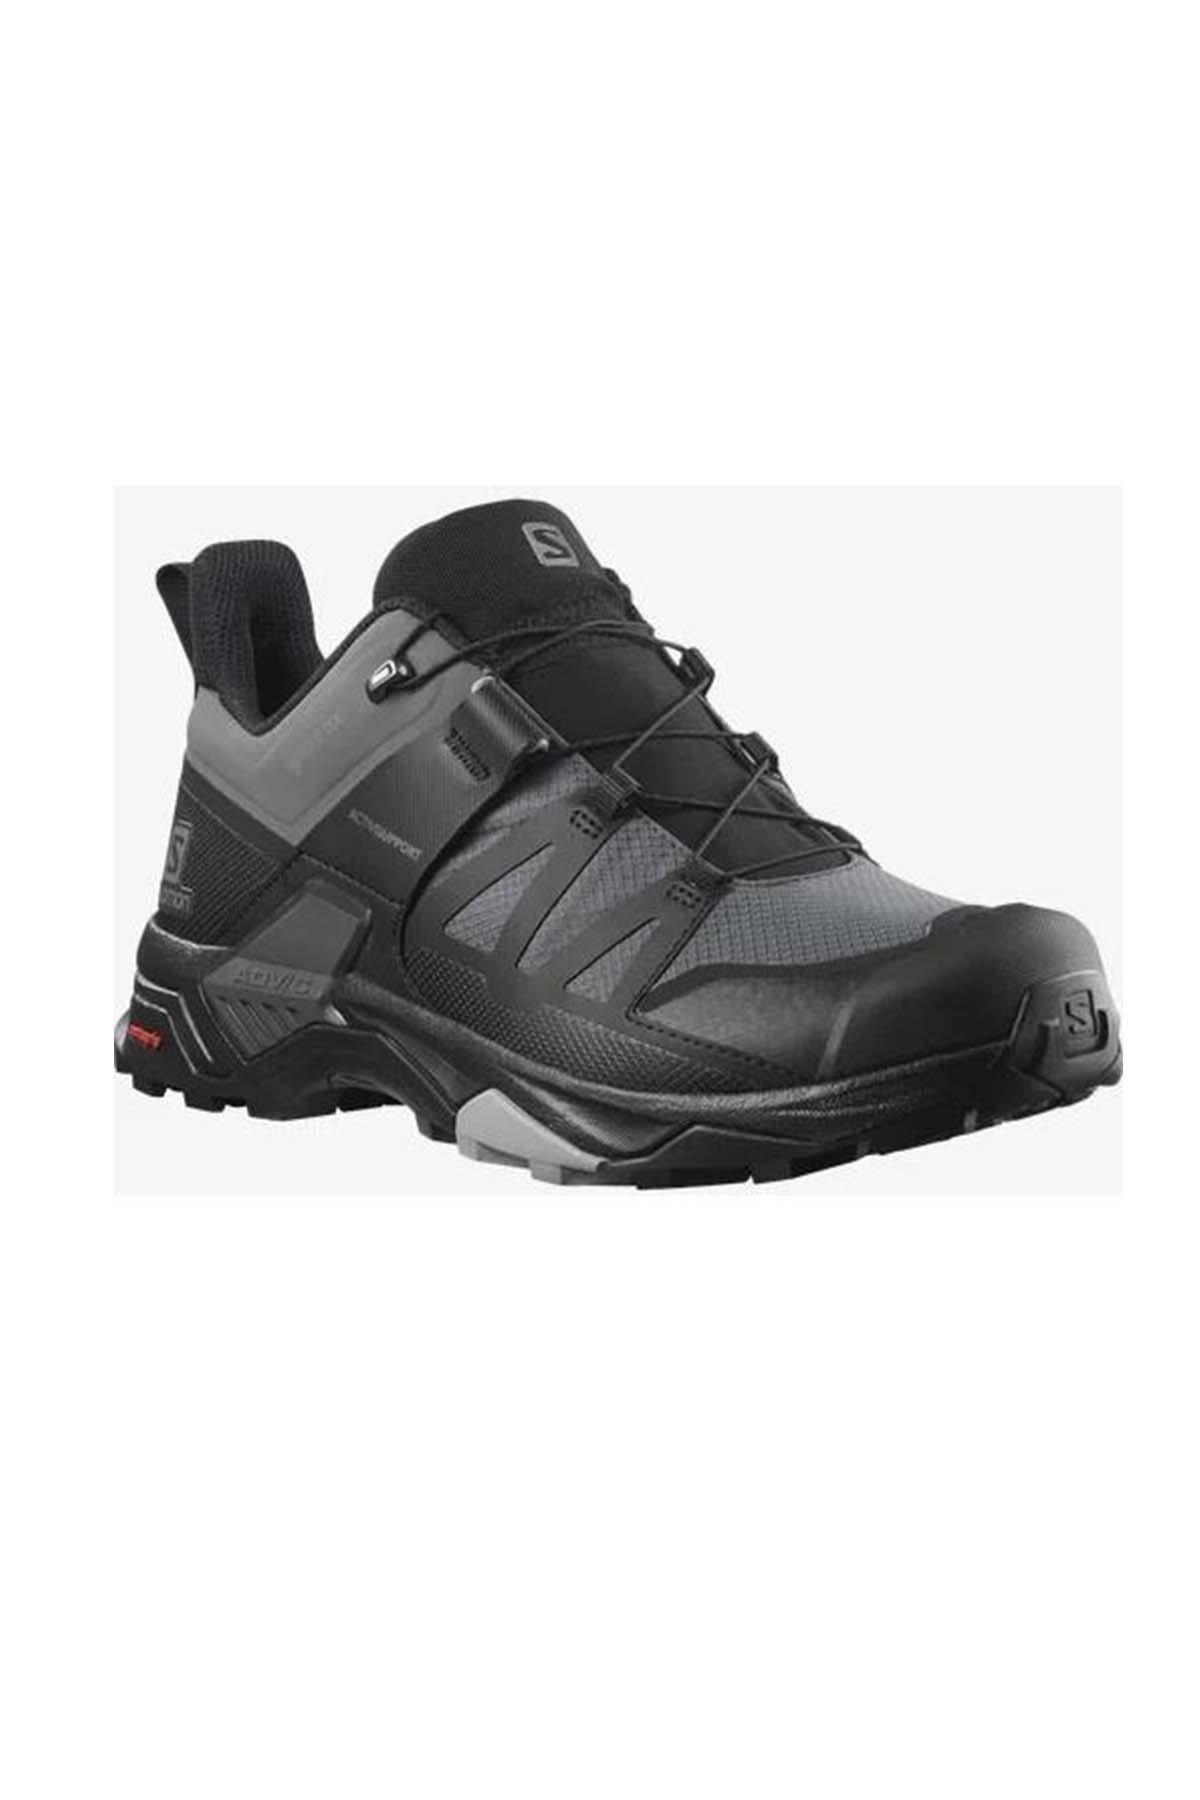  Salomon X ULTRA 4 GTX Erkek Ayakkabısı L41385100